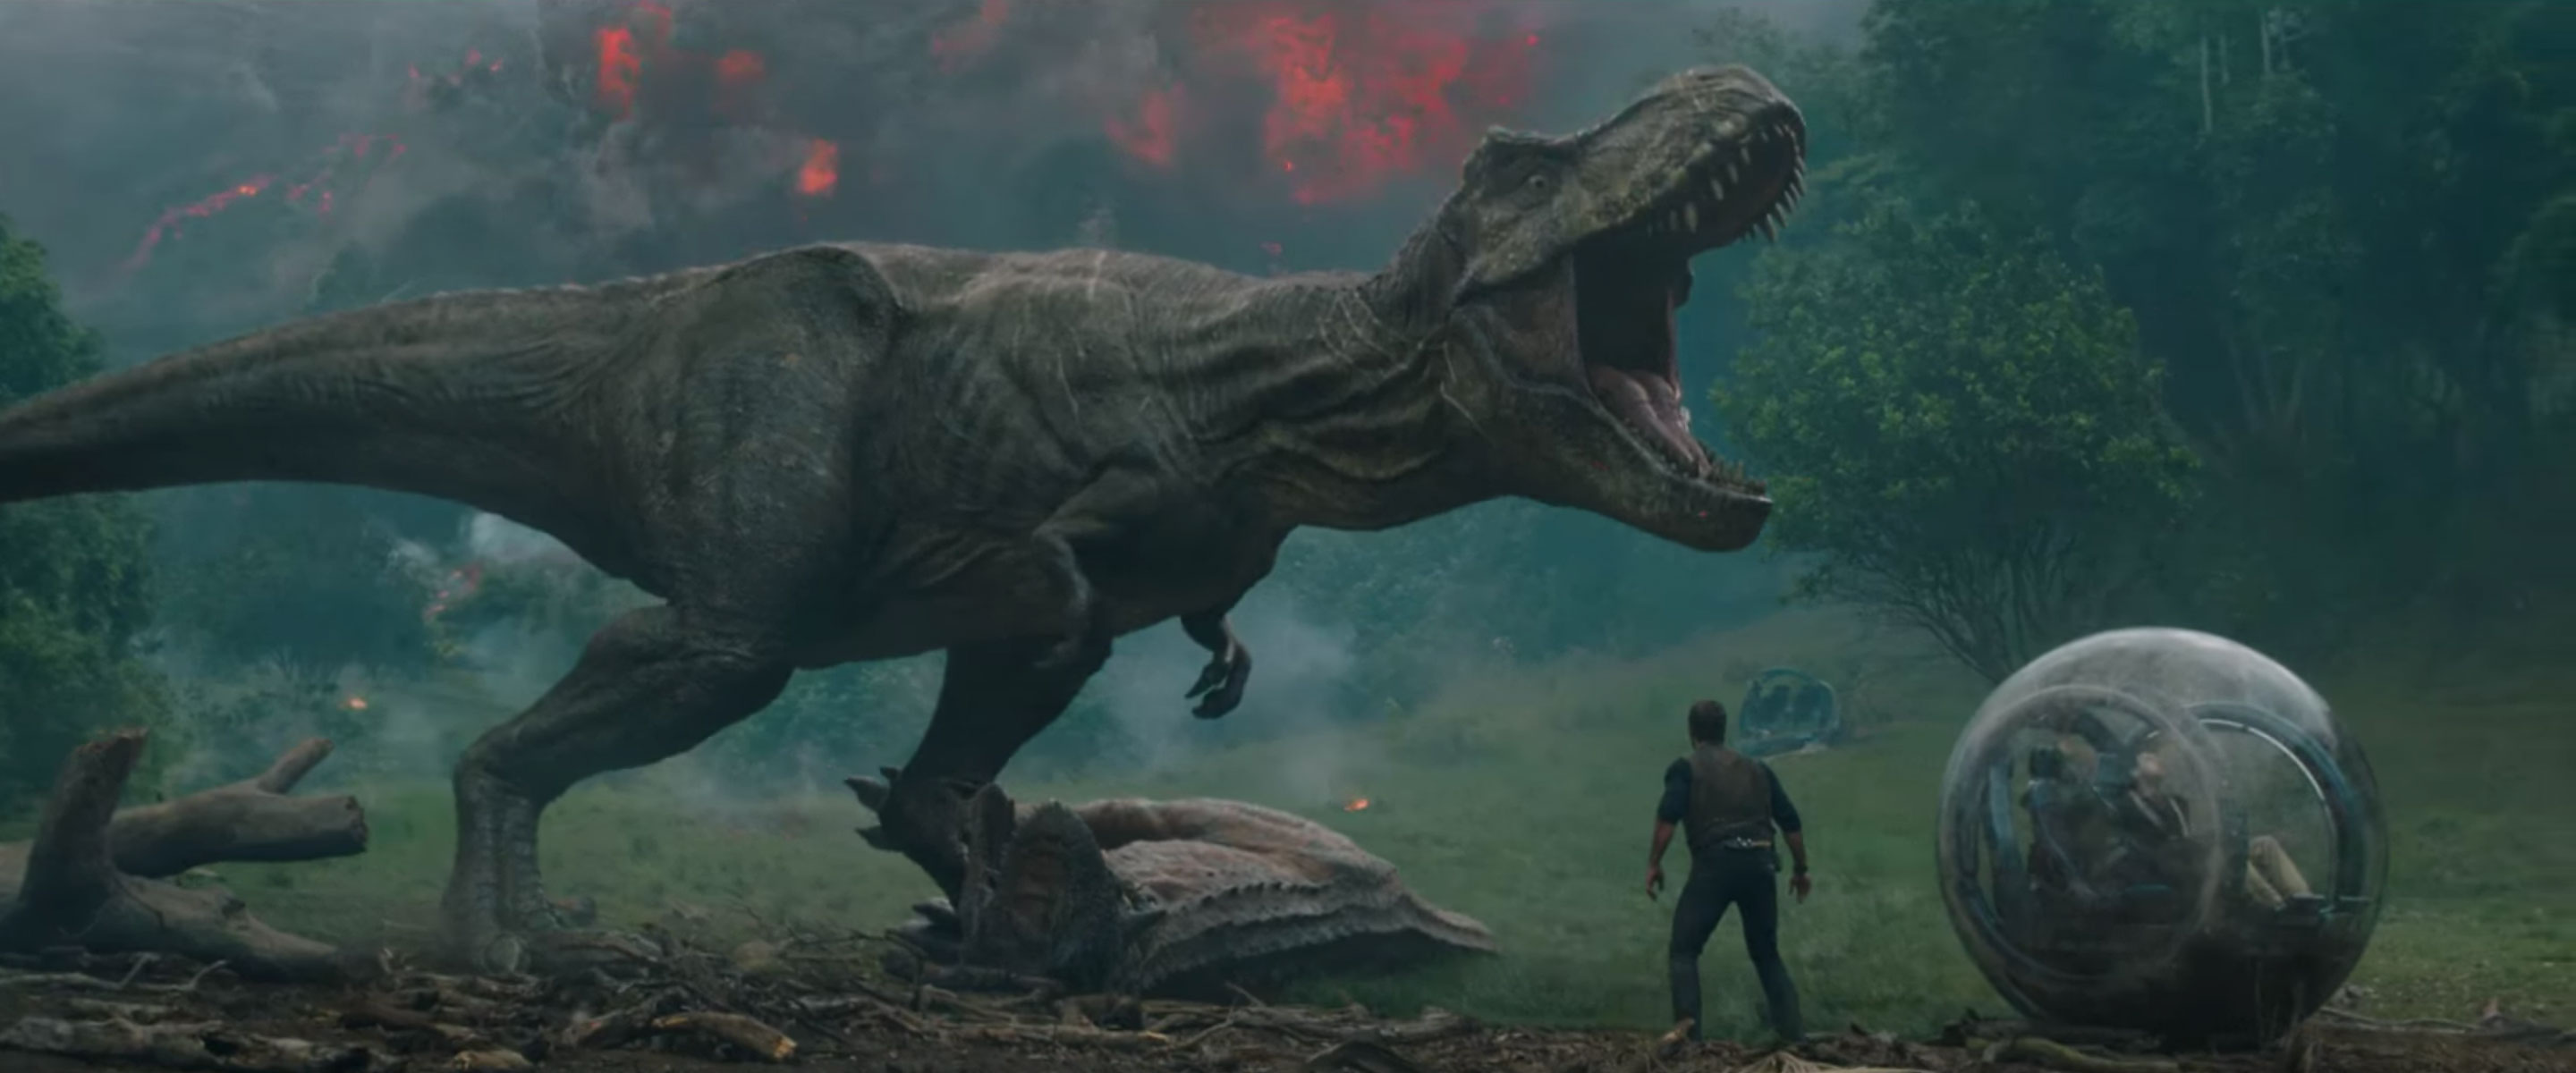 Life Breaks Free in Jurassic World: Fallen Kingdom – Official Trailer